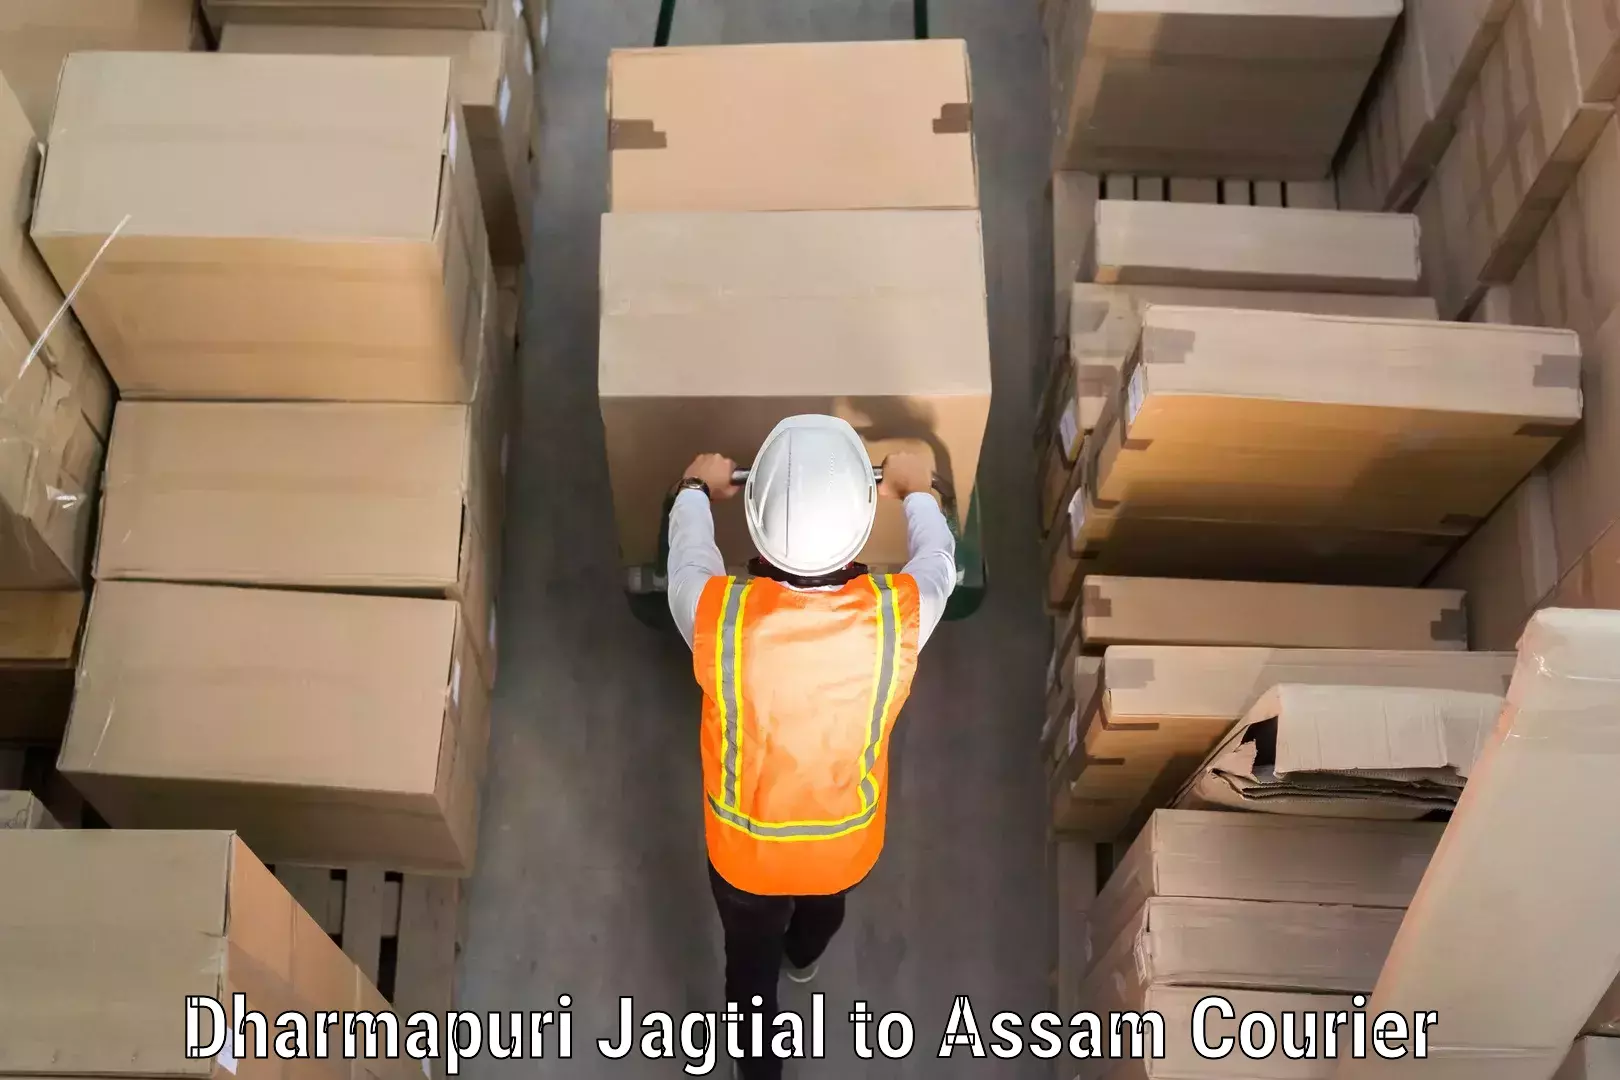 Personal baggage courier in Dharmapuri Jagtial to Kamrup